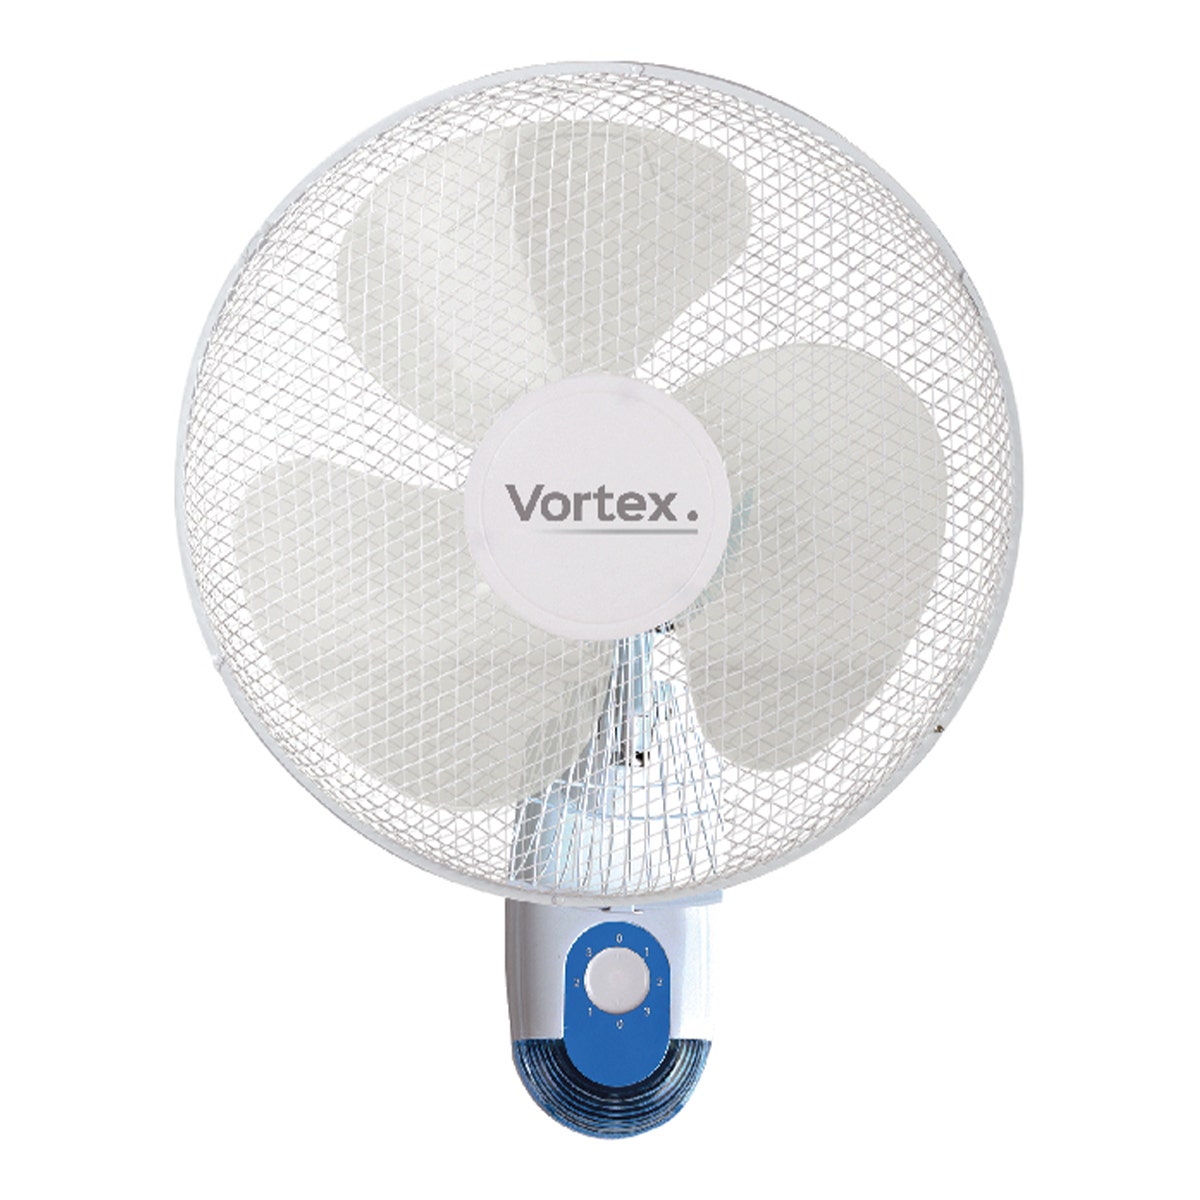 Vortex 16" Oscillating Wall Fan